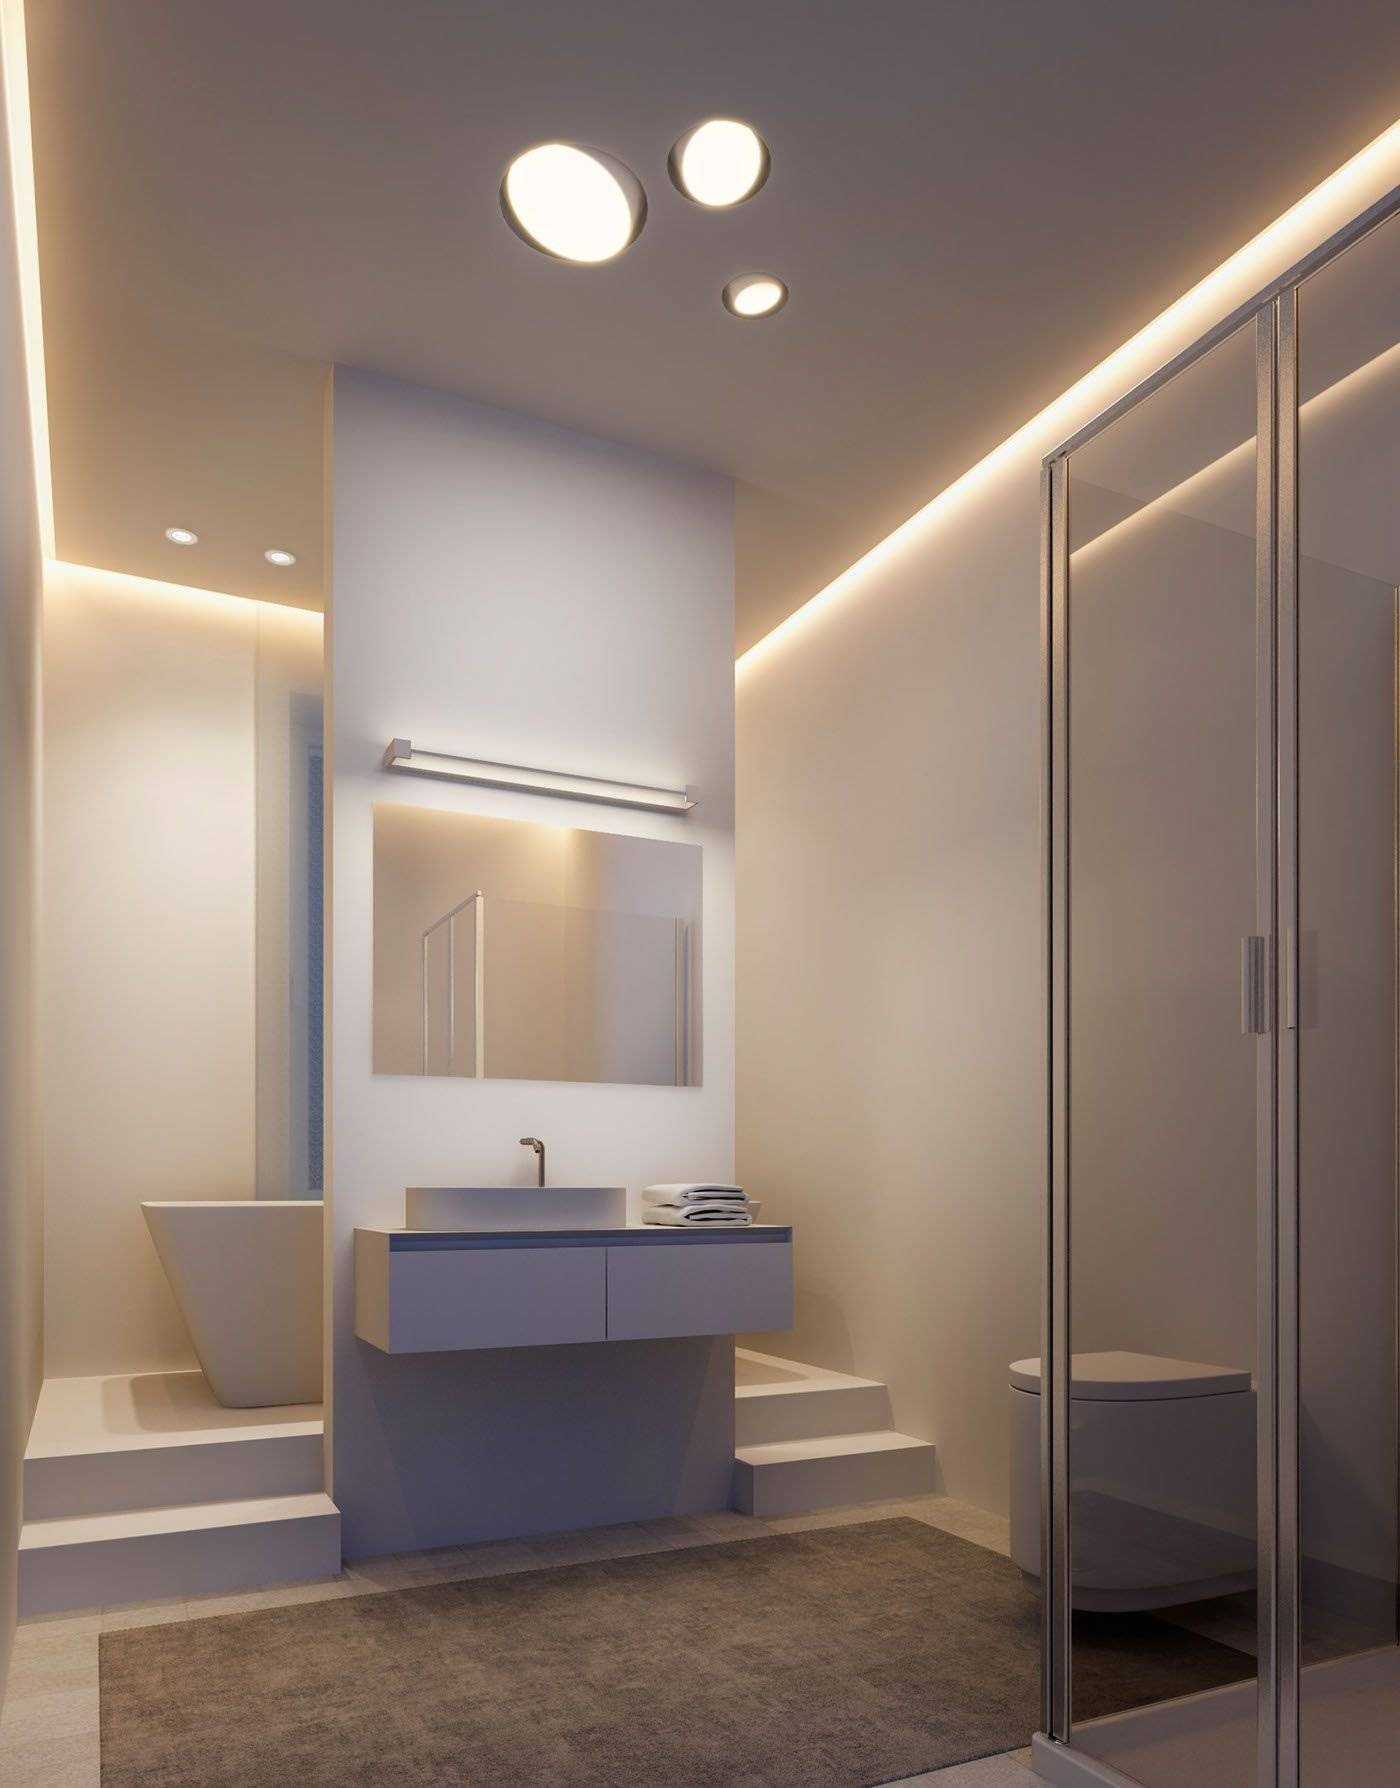 Освещение ванной комнаты, фото проектов, светильники в интерьере